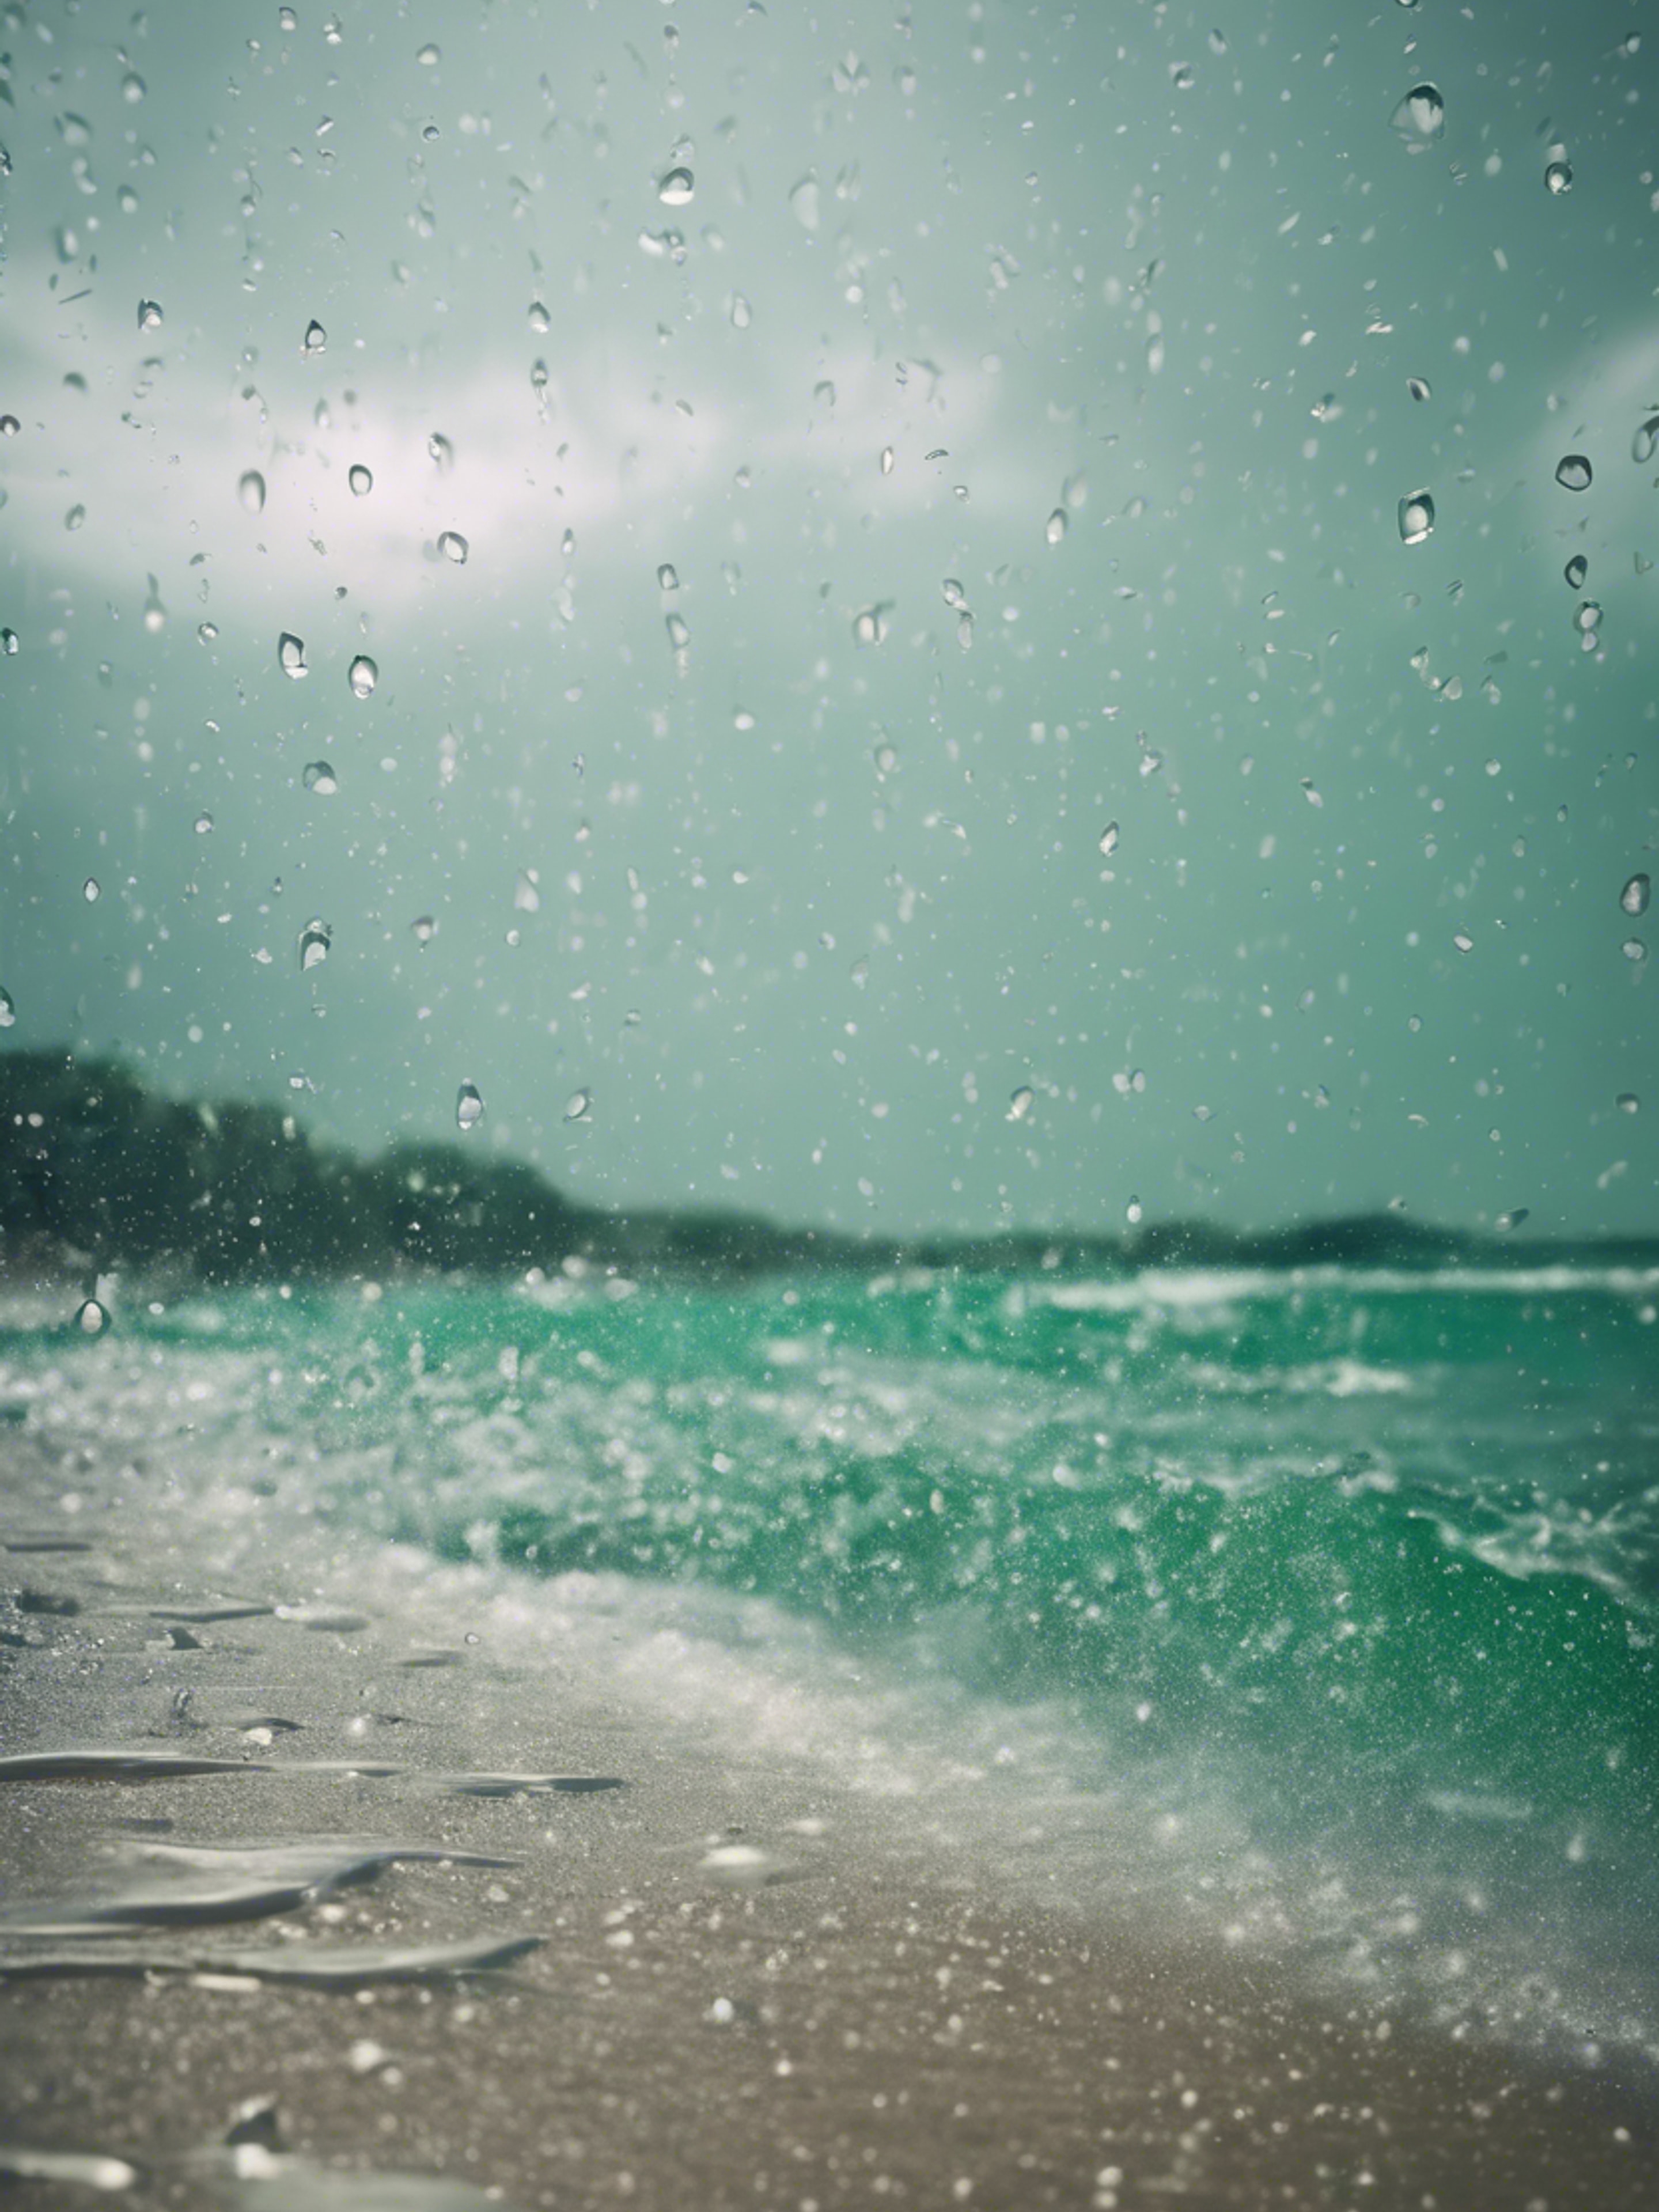 A tropical beach during a heavy downpour, raindrops peppering the emerald ocean surface. Tapeta[12d3e55d32da4f6db703]